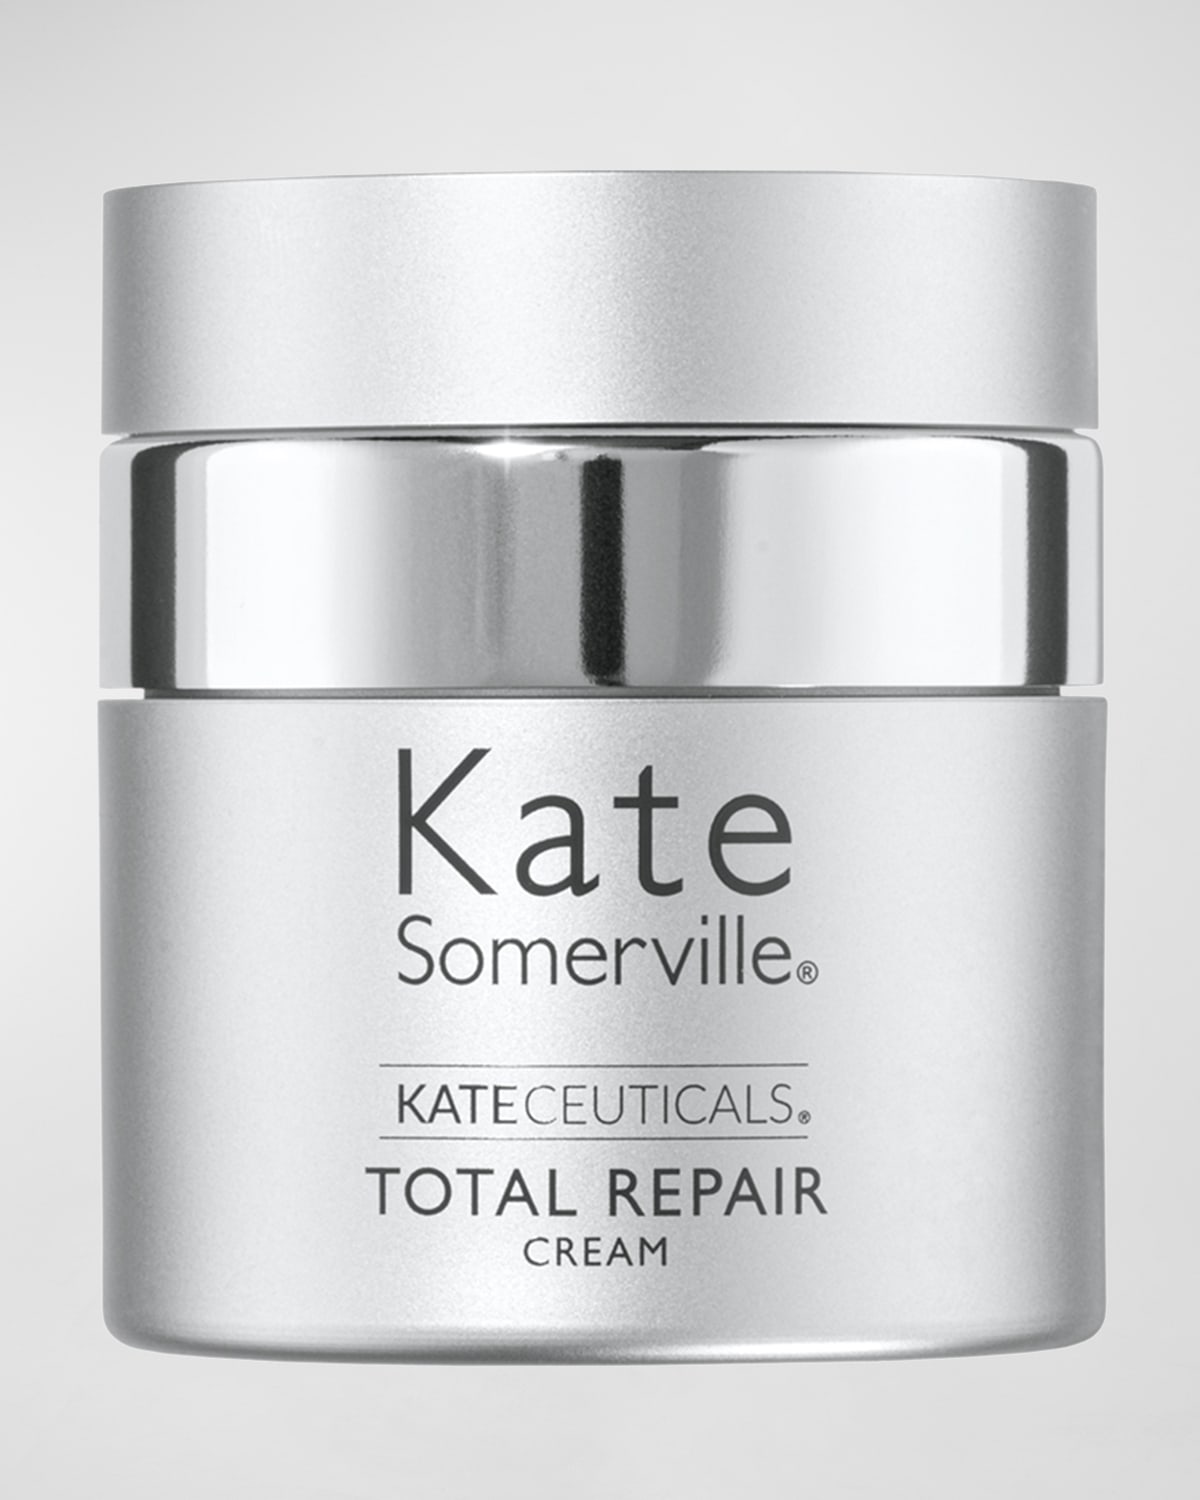 KateCeuticals Total Repair Cream, 1 oz.